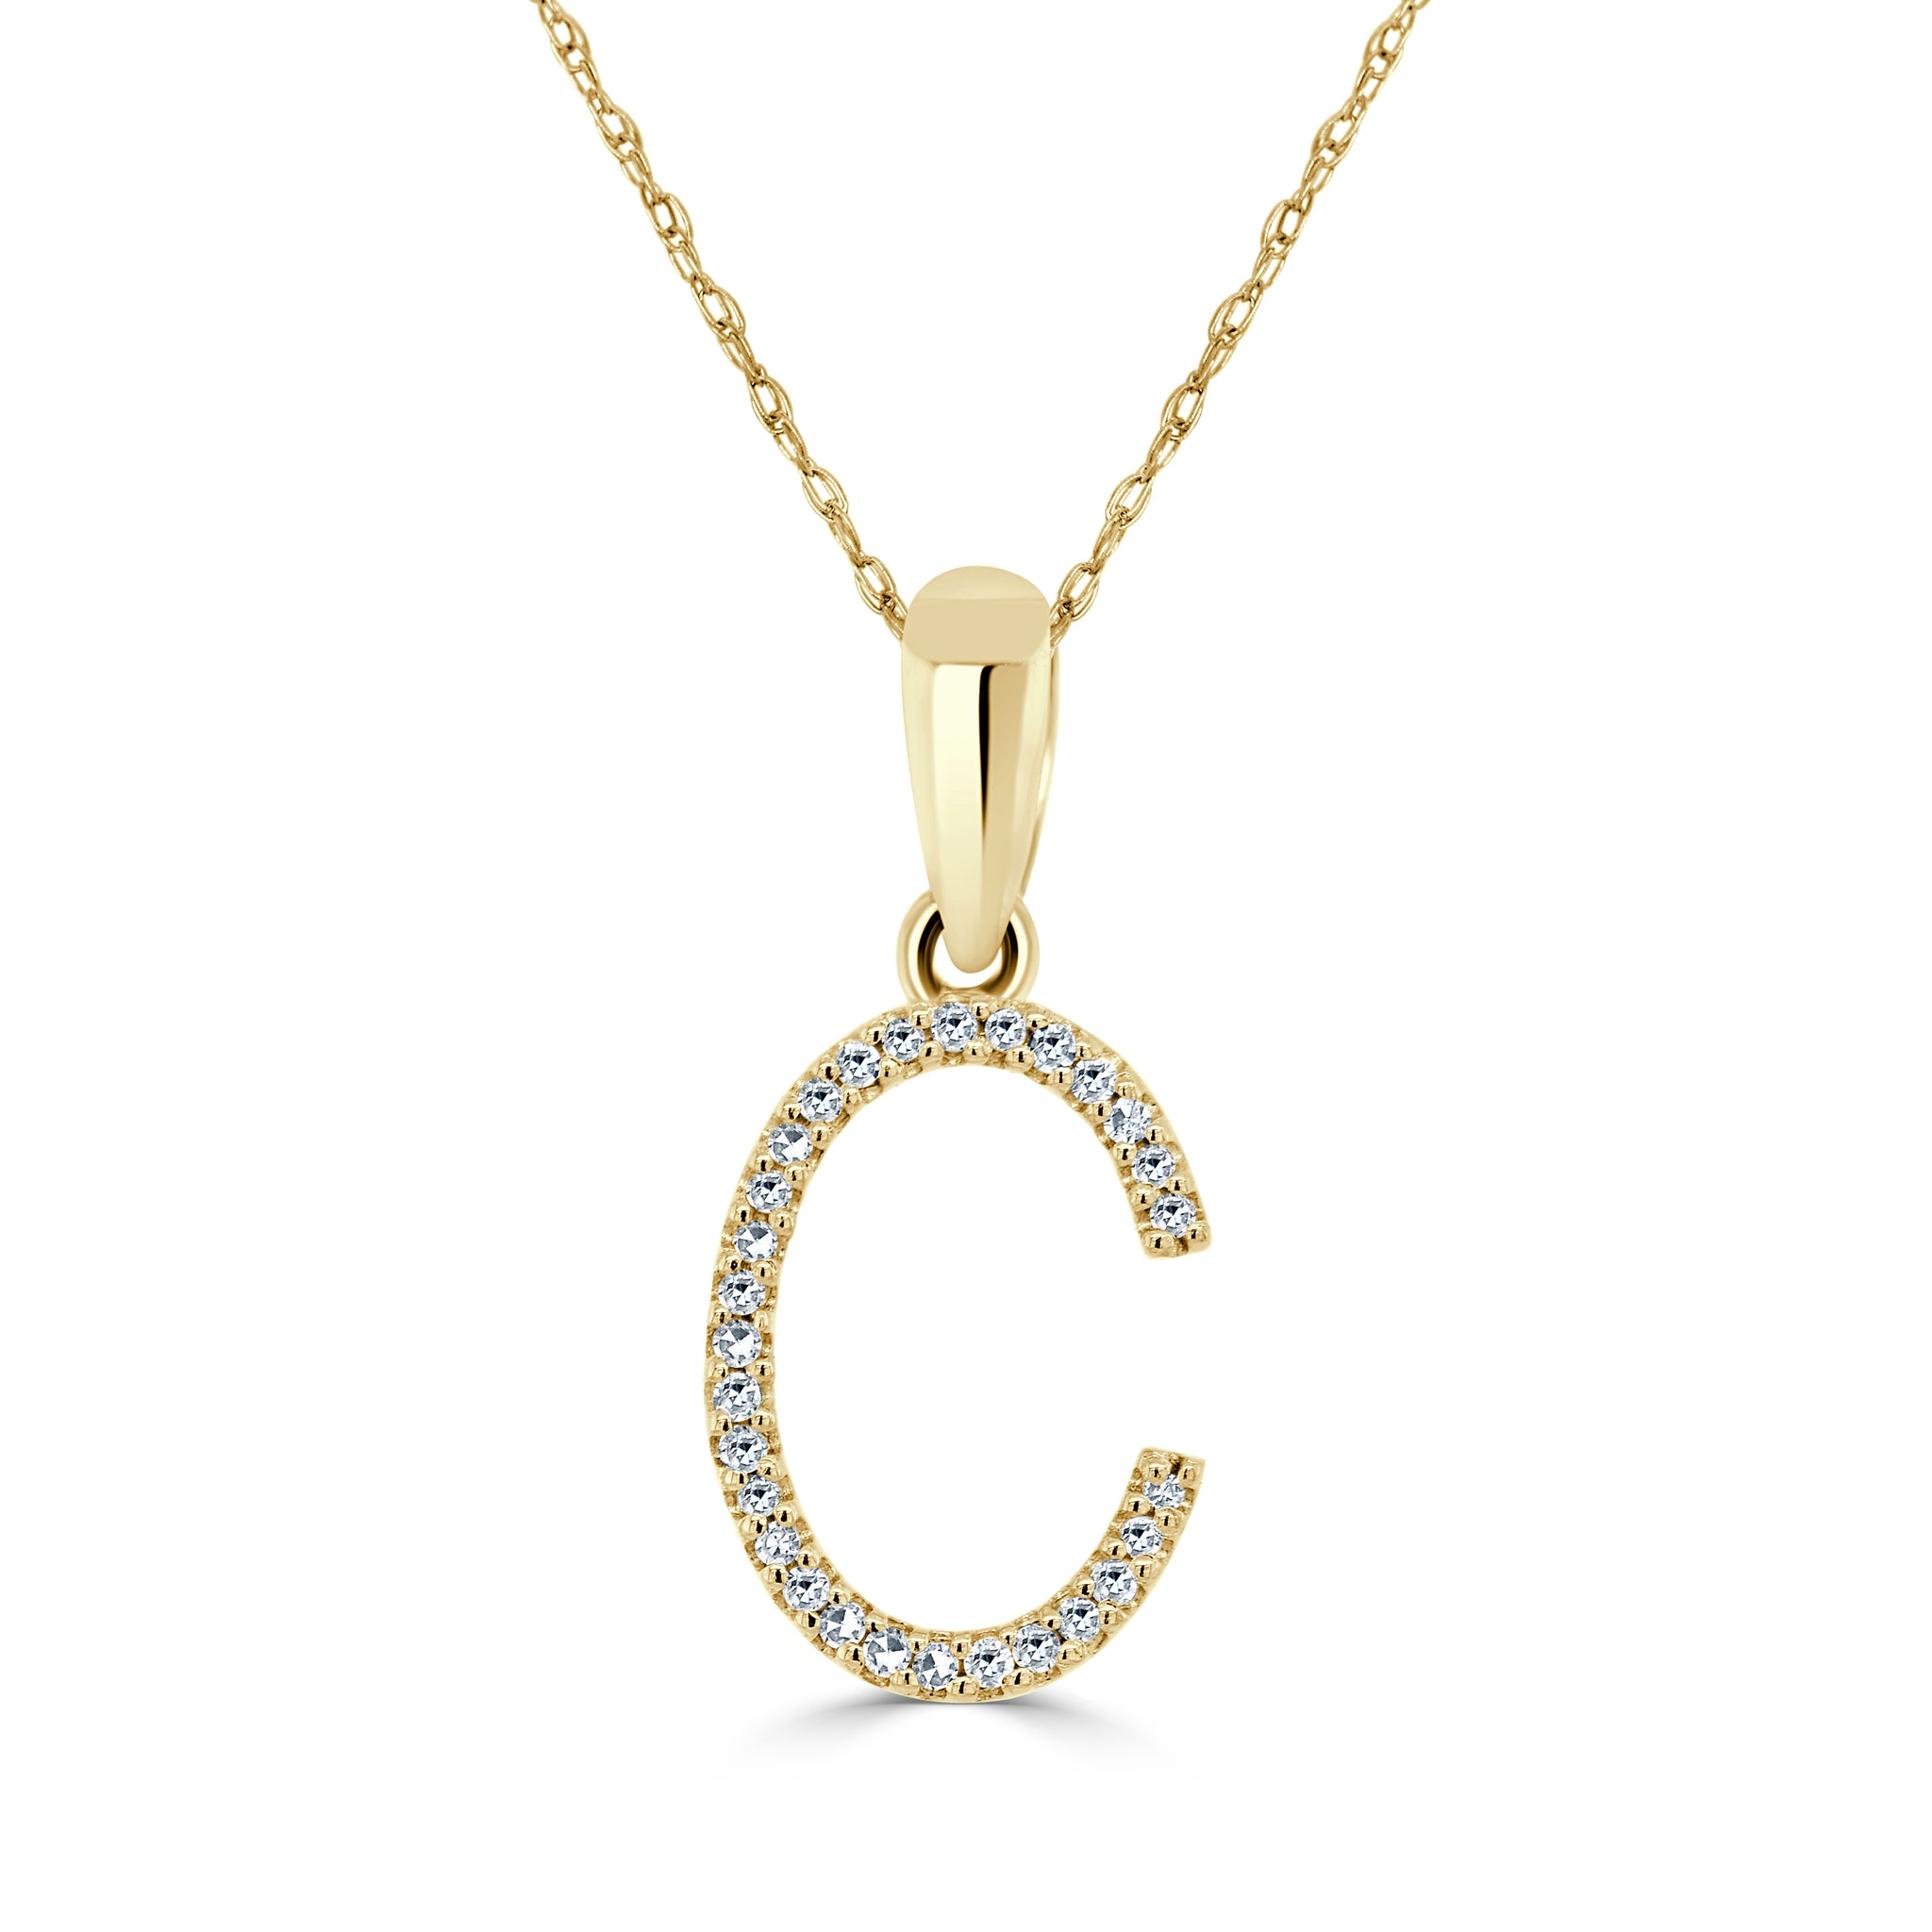 320 Nagina ideas  diamond jewelry designs, diamond necklace designs,  diamond jewelry necklace